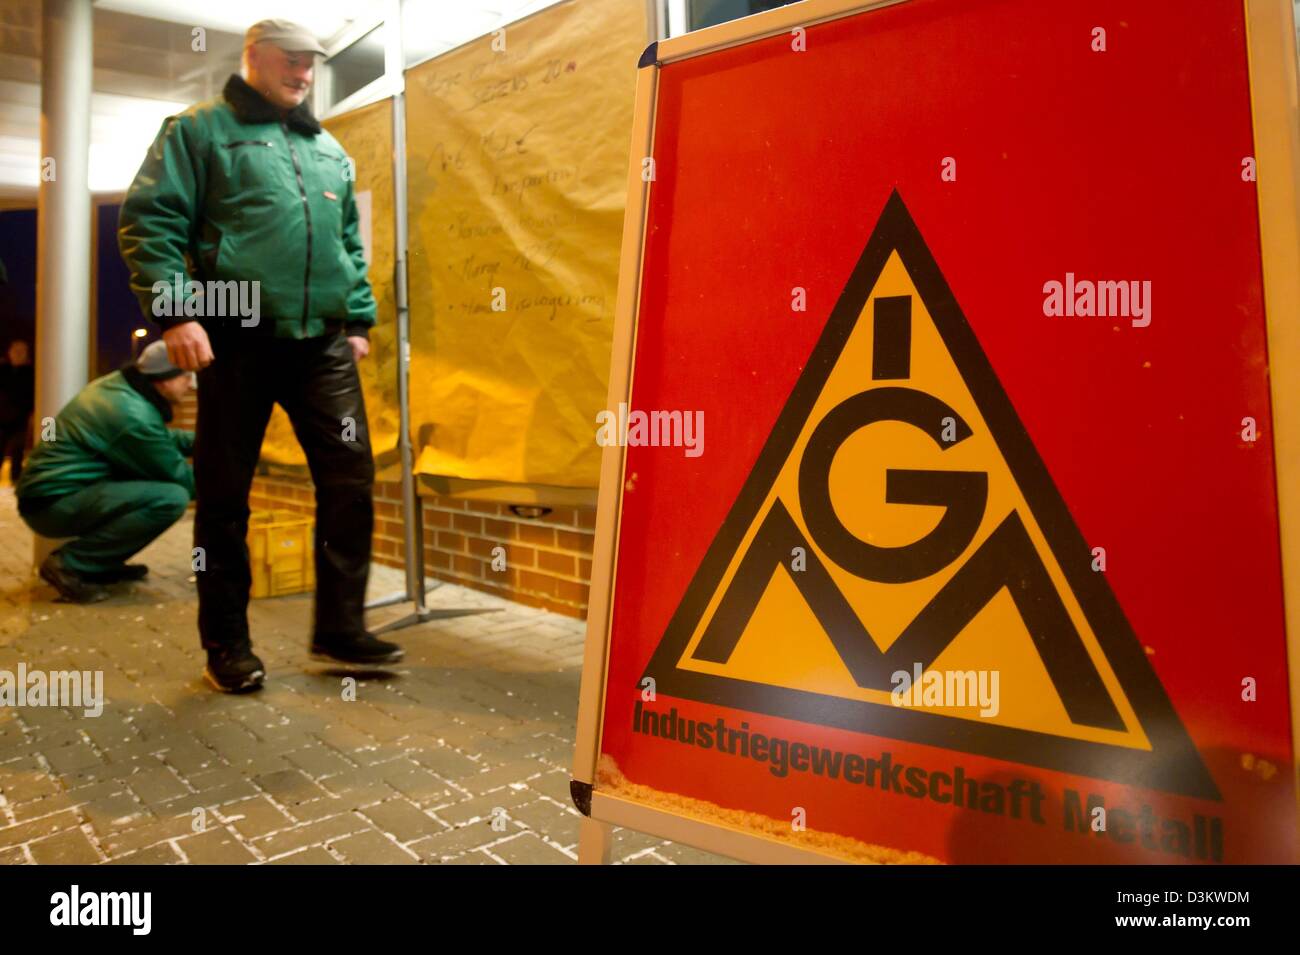 Un dipendente Siemens passeggiate passato una targhetta di protesta presso l'impianto di Siemens a Erfurt, Germania, 21 febbraio 2013. I dipendenti Siemens ha annunciato le azioni di protesta contro le previste misure di austerità in tutta la Germania. Foto: Marc Tirl Foto Stock